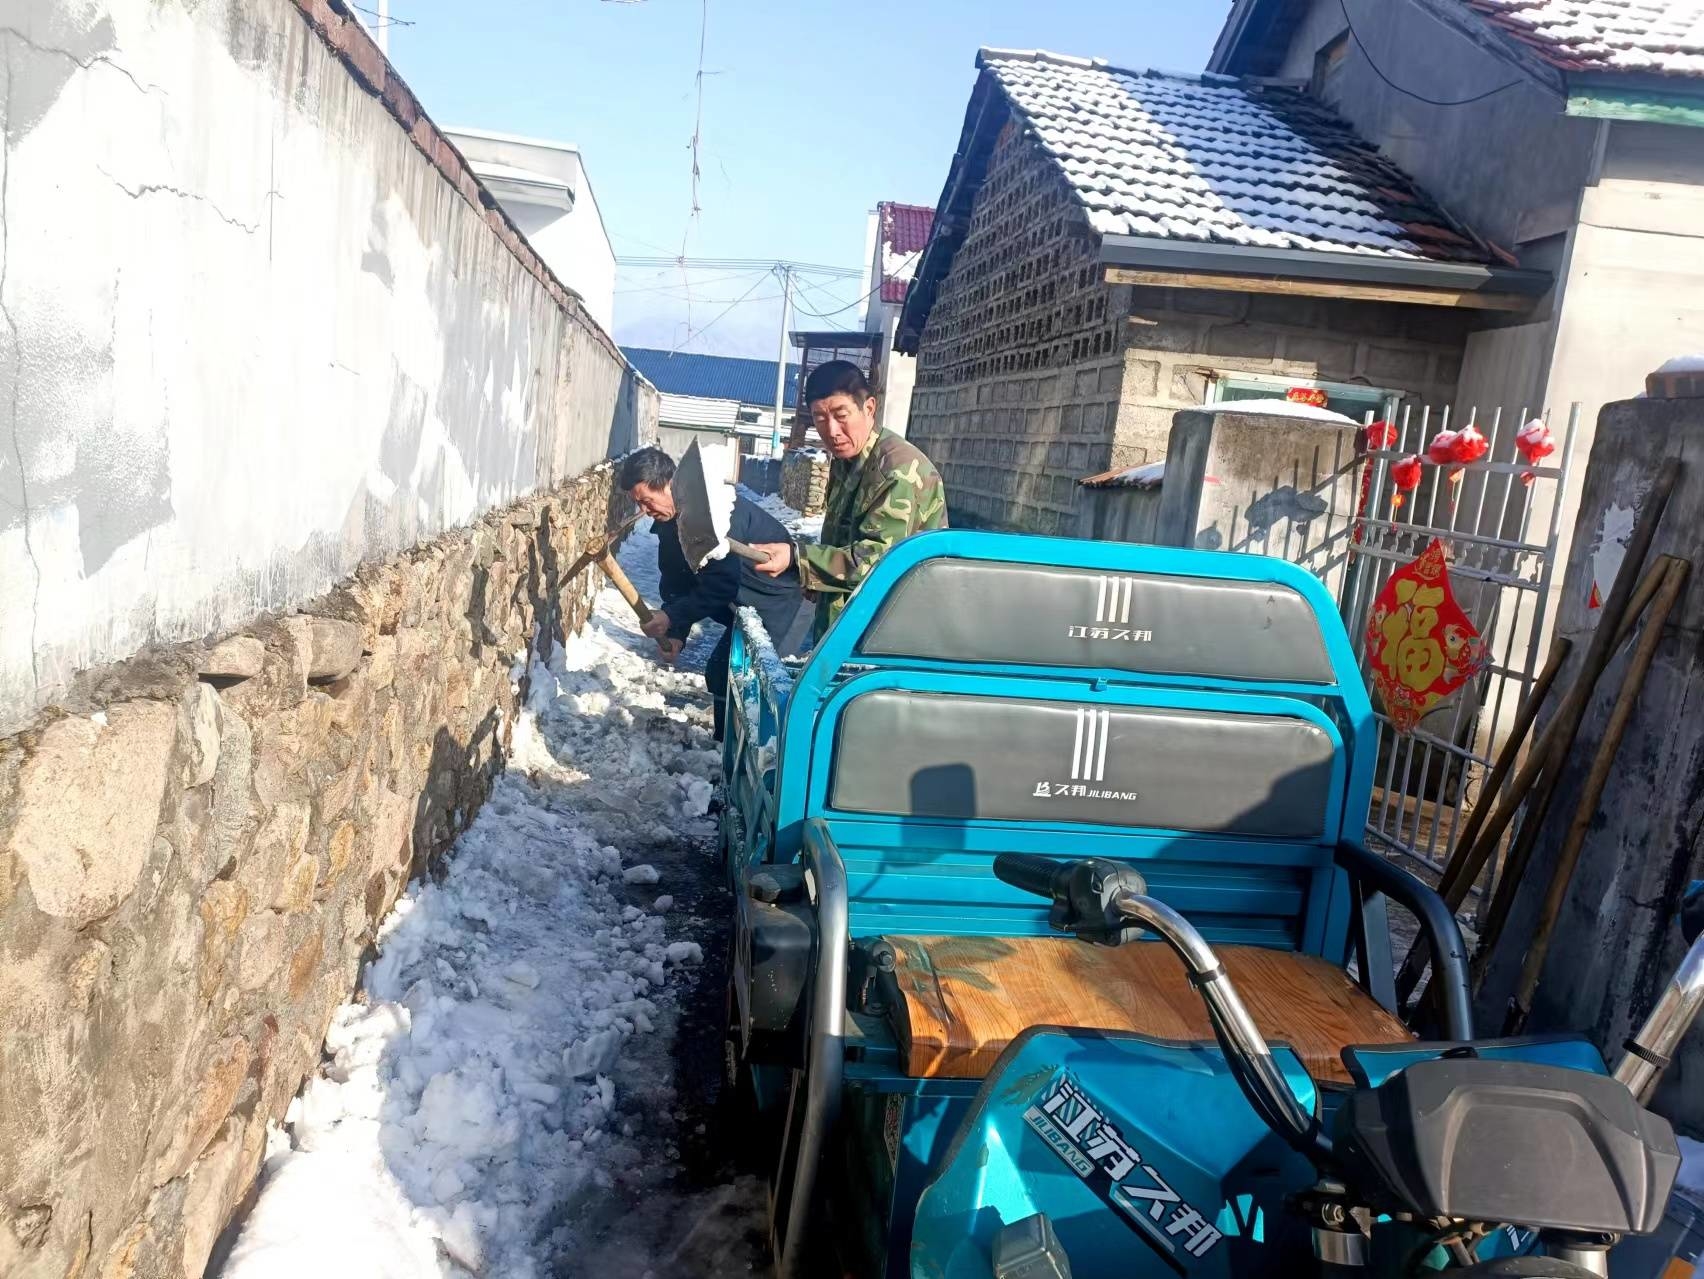 集安市榆林镇积极开展“清除冰雪 保障出行”志愿服务活动